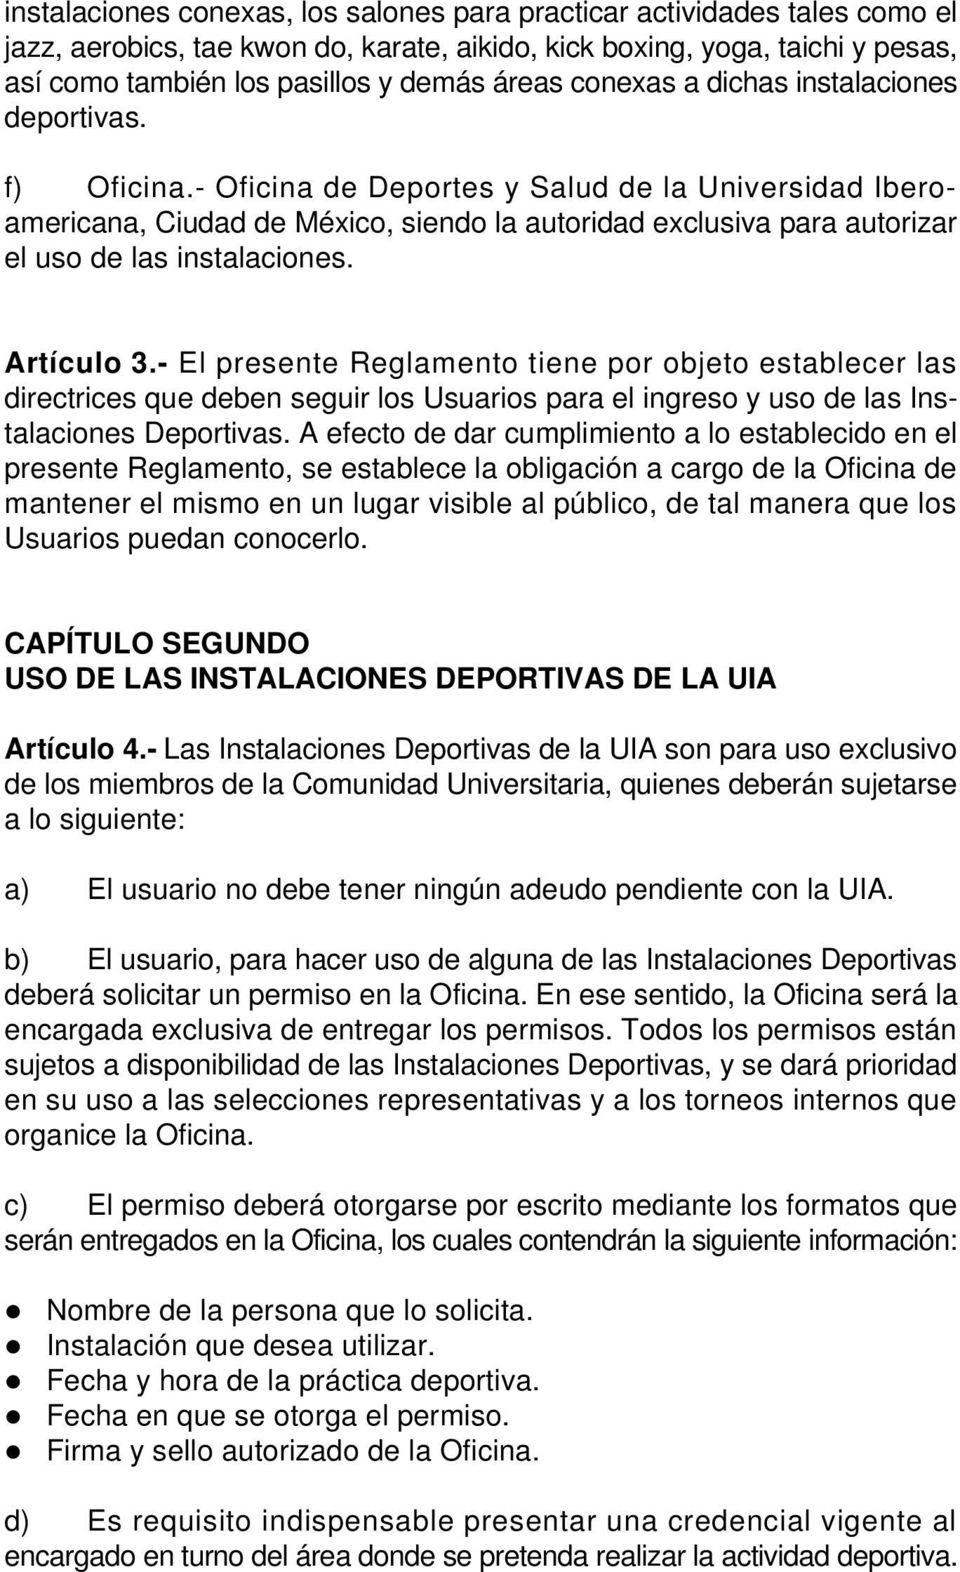 - Oficina de Deportes y Salud de la Universidad Iberoamericana, Ciudad de México, siendo la autoridad exclusiva para autorizar el uso de las instalaciones. Artículo 3.